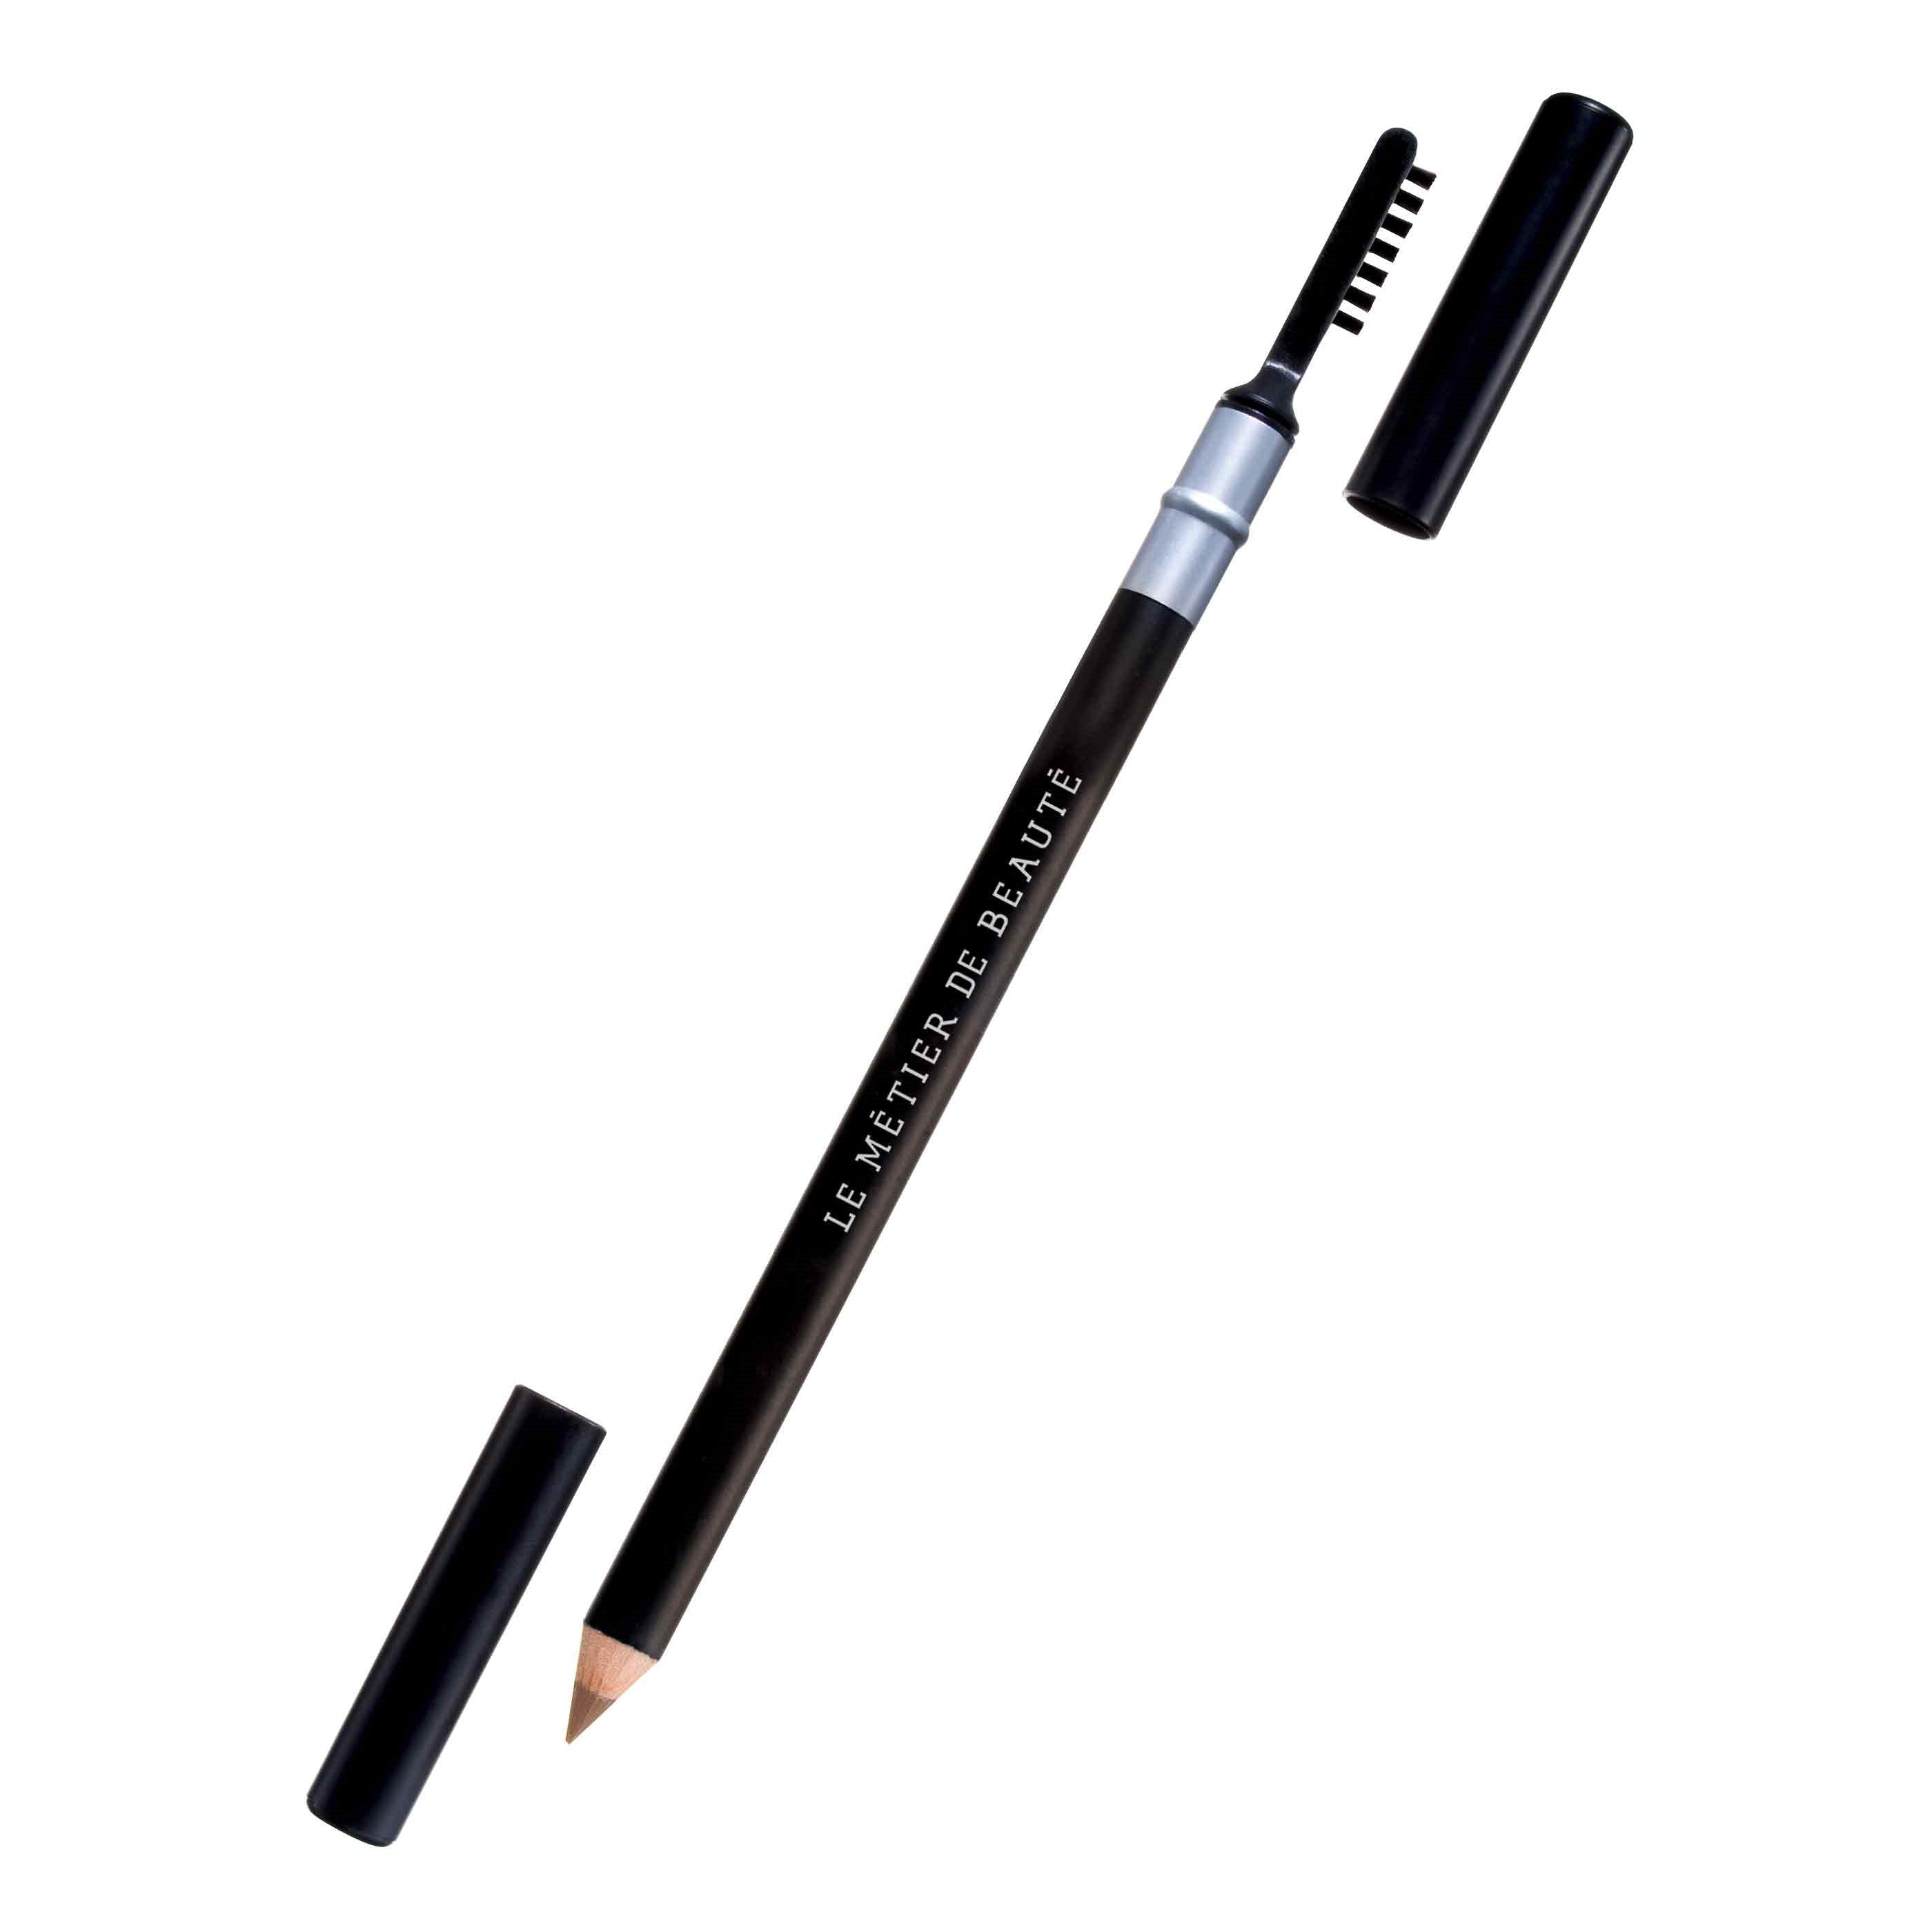 Brow Bound Eyebrow Defining Pencil